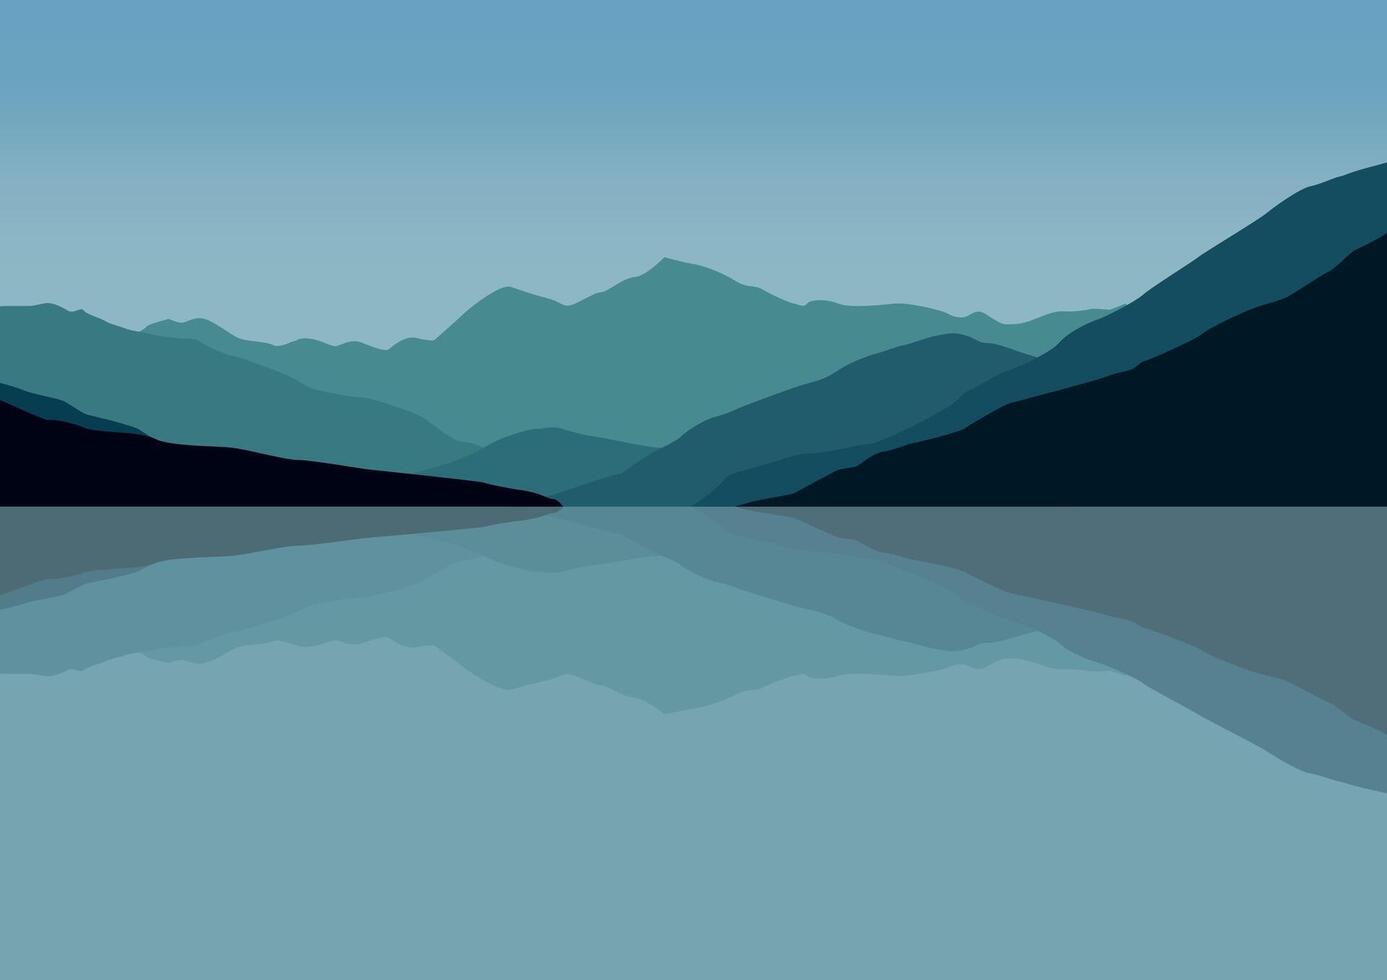 montagnes dans des lacs. illustration dans plat style. vecteur